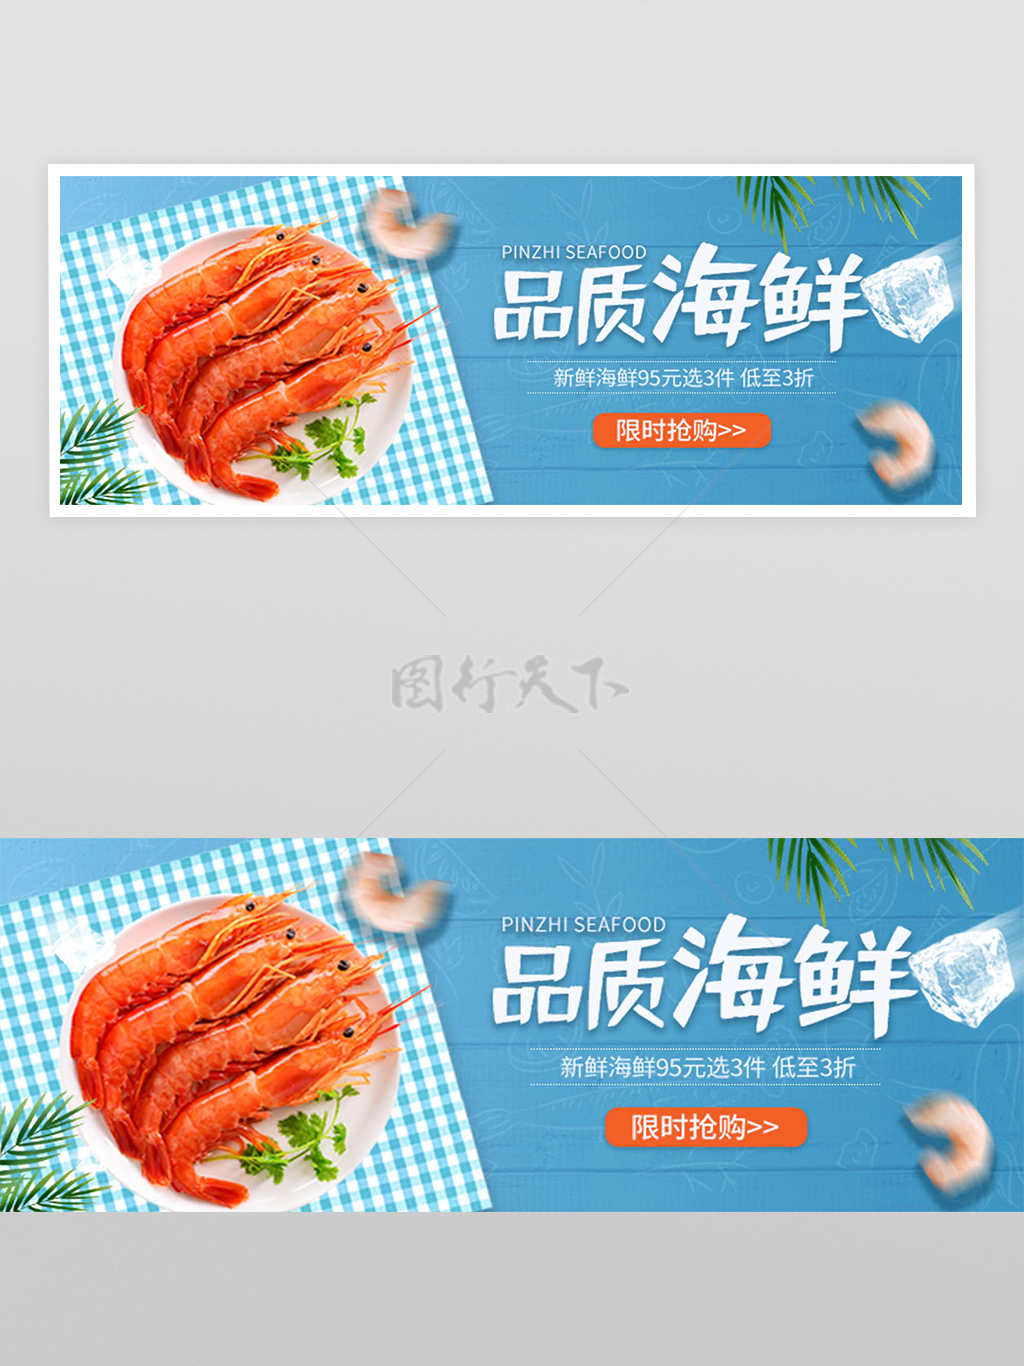 品质海鲜促销活动宣传外卖横幅banner